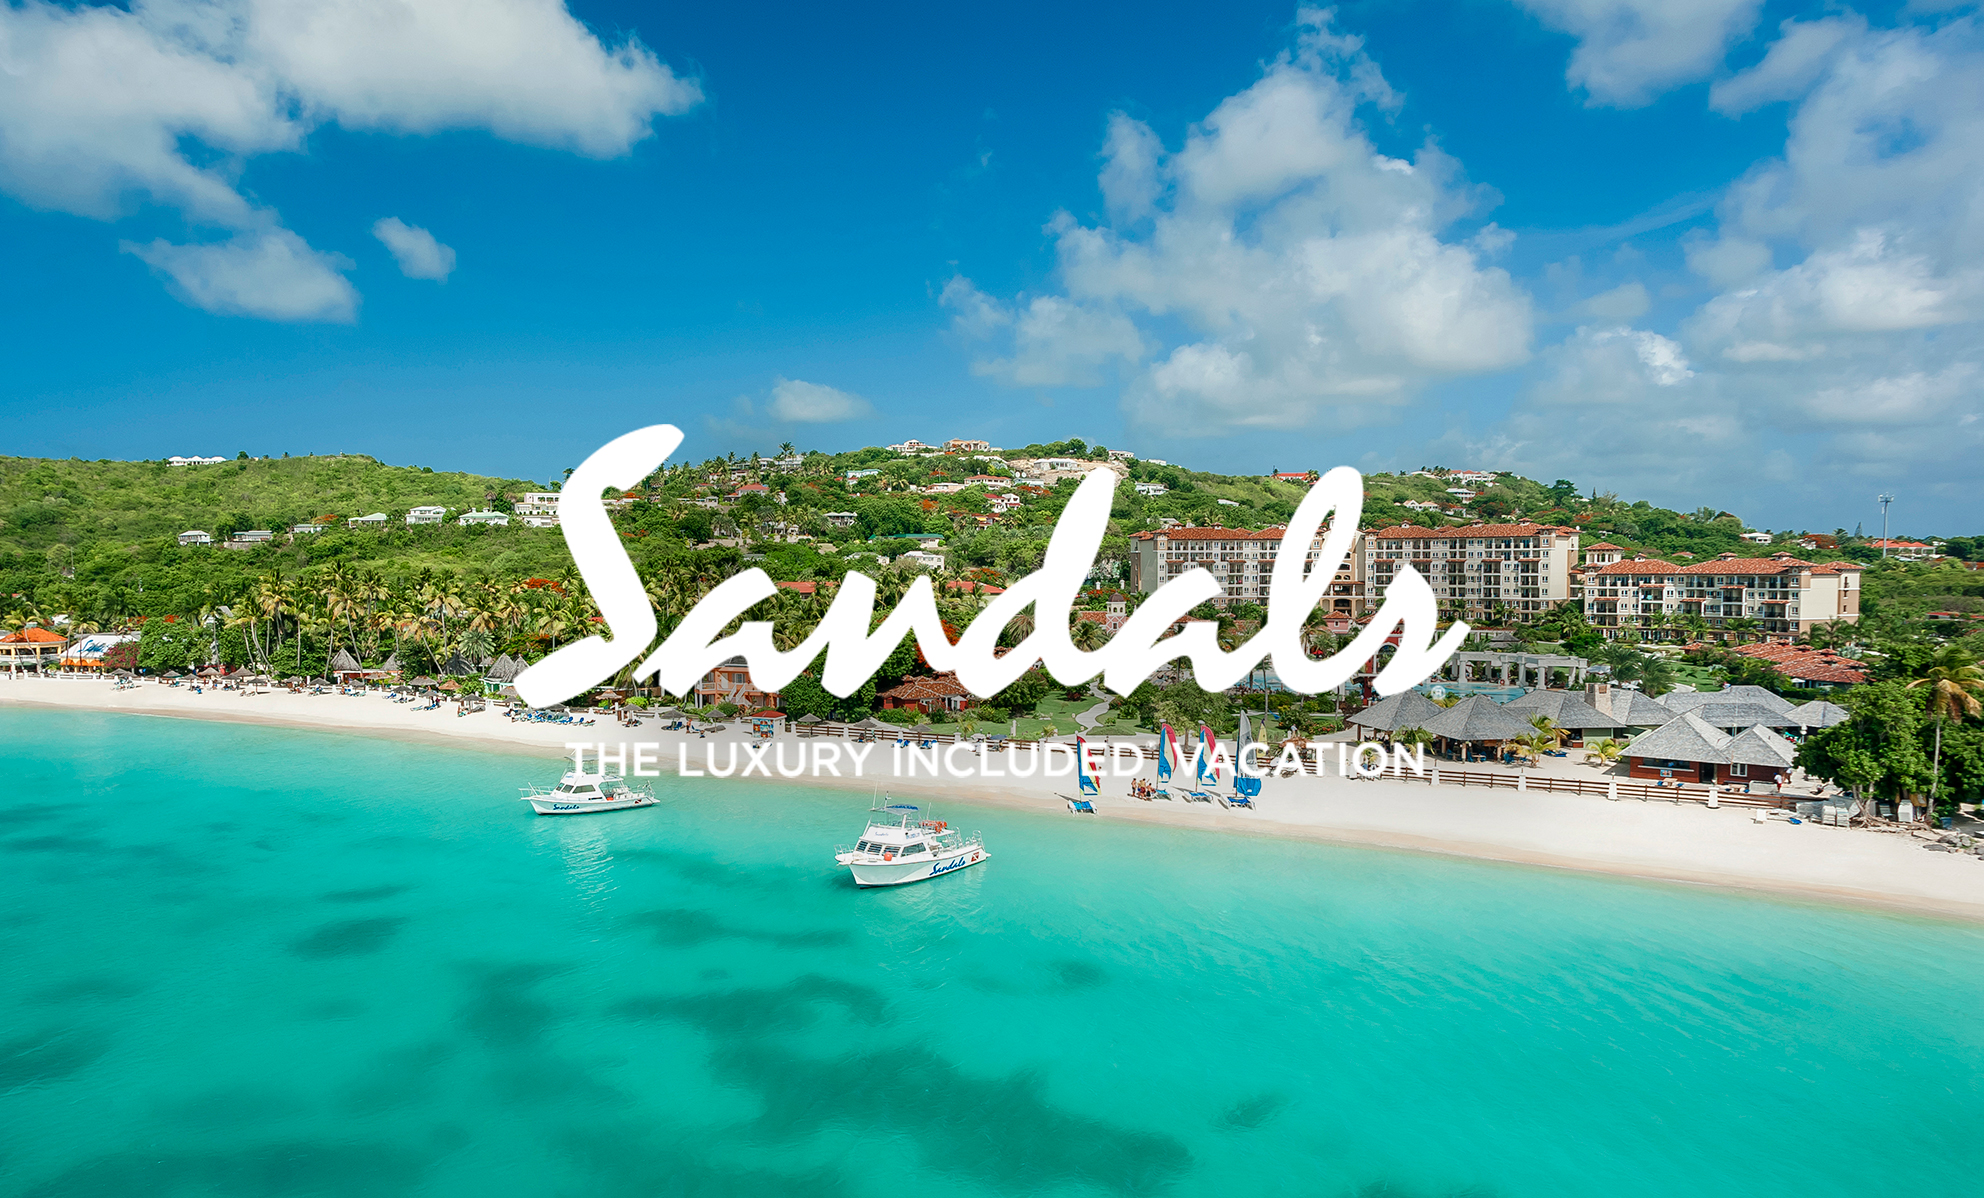 Explore Sandals Resorts